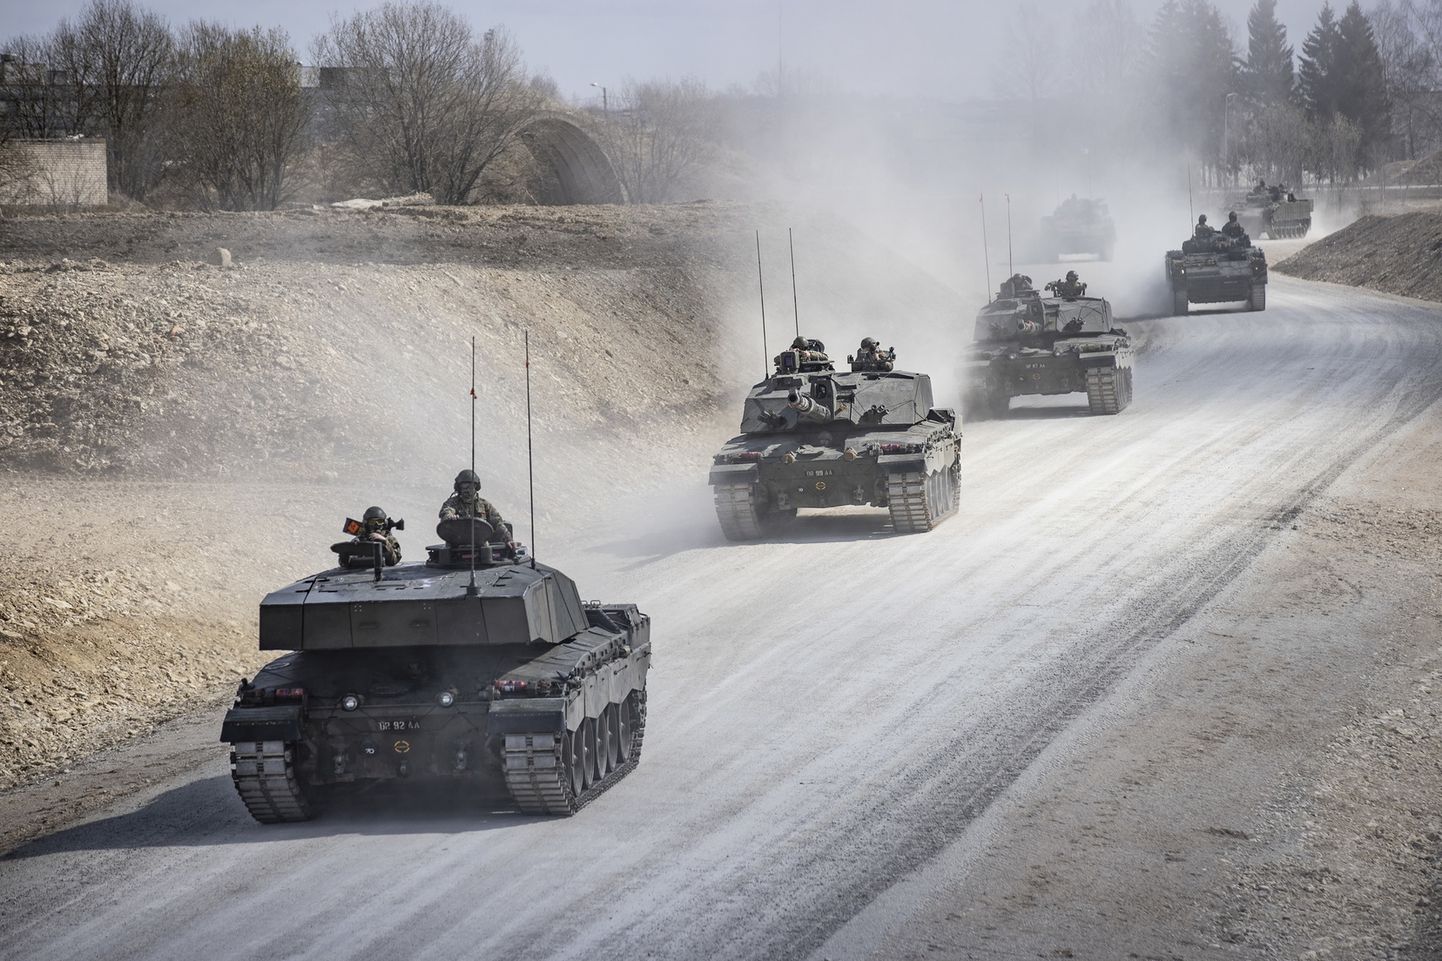 Завтра и послезавтра по дорогам Эстонии пройдут колонны военной техники.